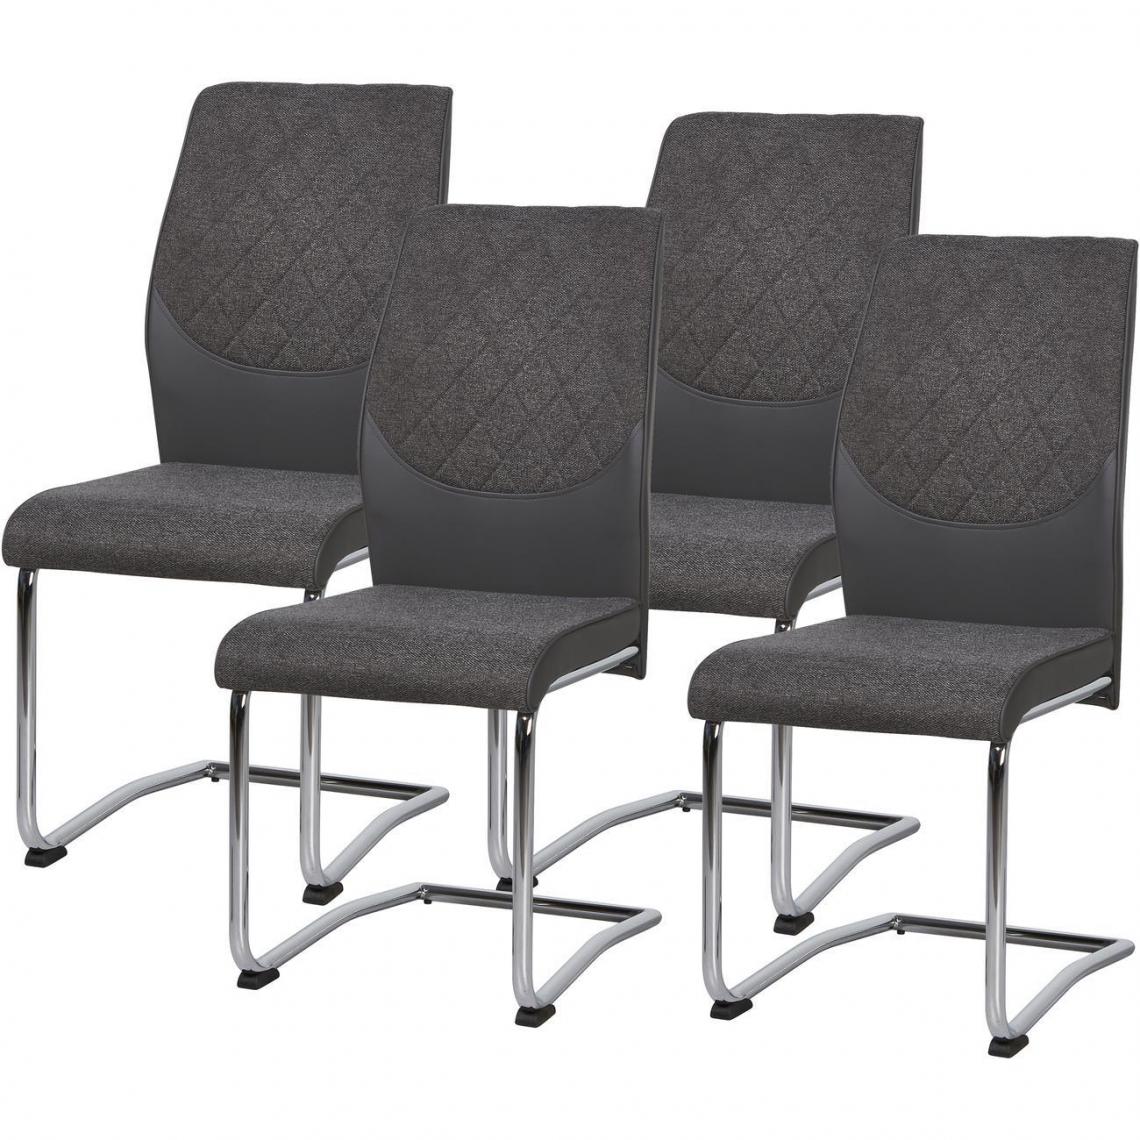 ATHM DESIGN - Lot de 4 - Chaise SWINTON Gris Anthracite - assise Tissu et Cuir PU pieds Metal - Chaises